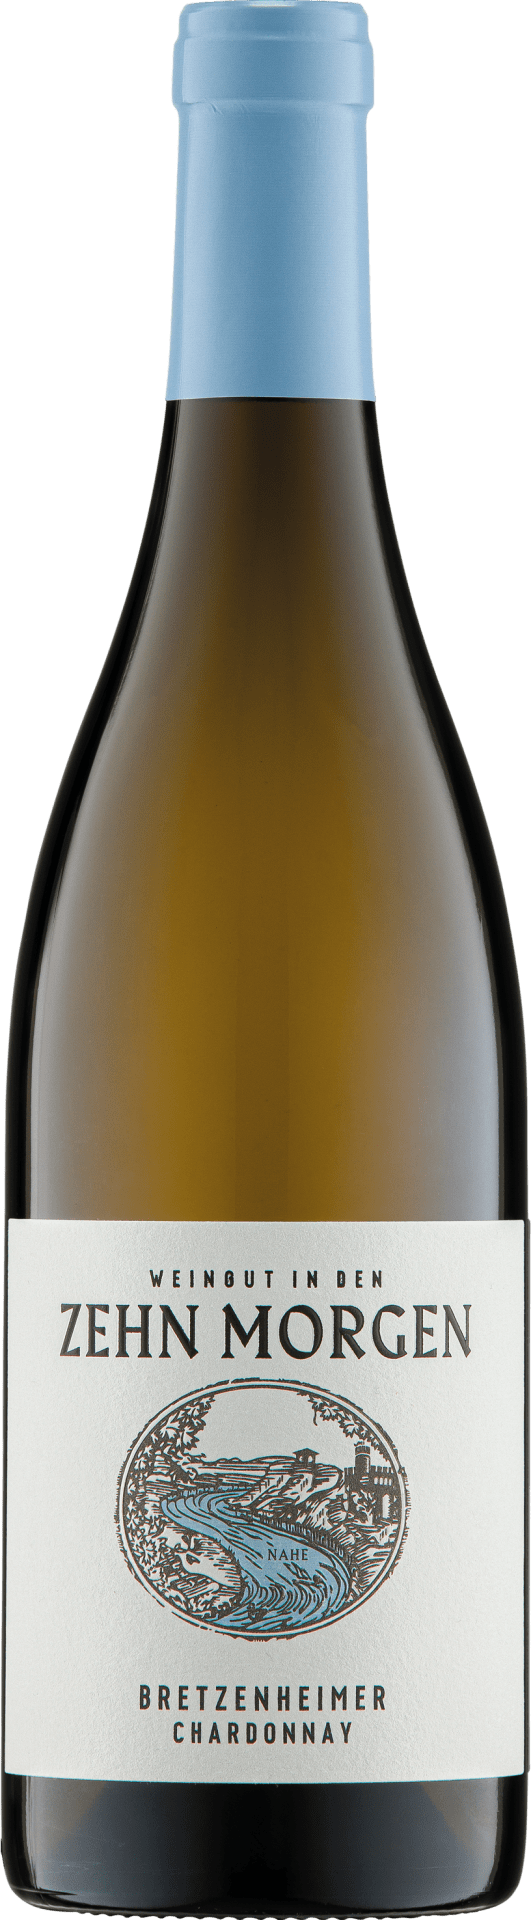 Bretzenheimer Chardonnay 